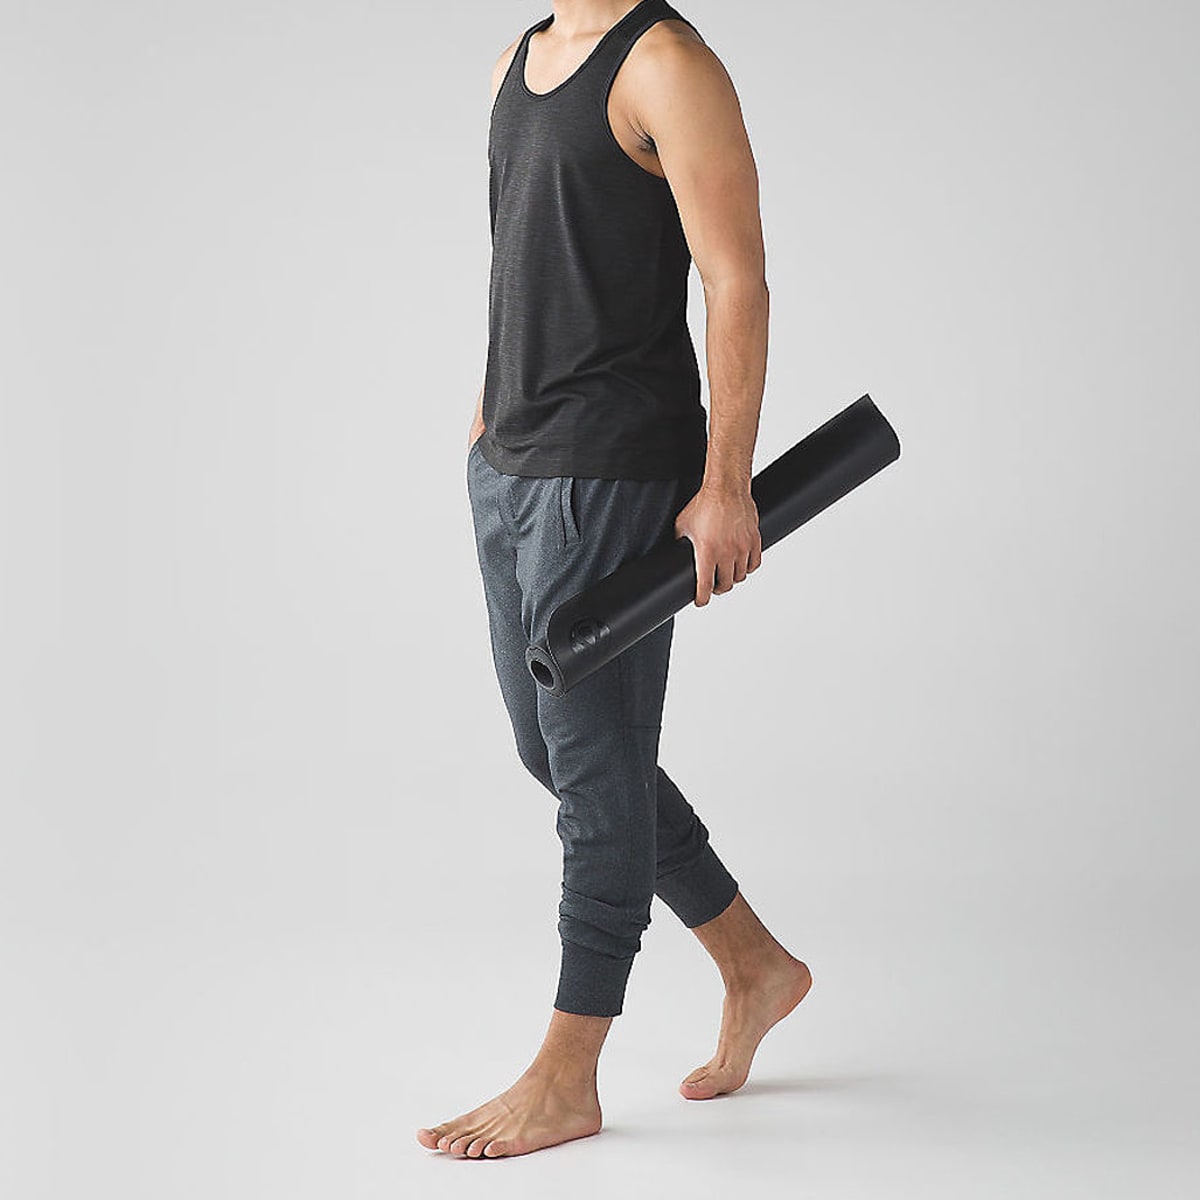 Mens yoga clothing - Sweat-n-Stretch